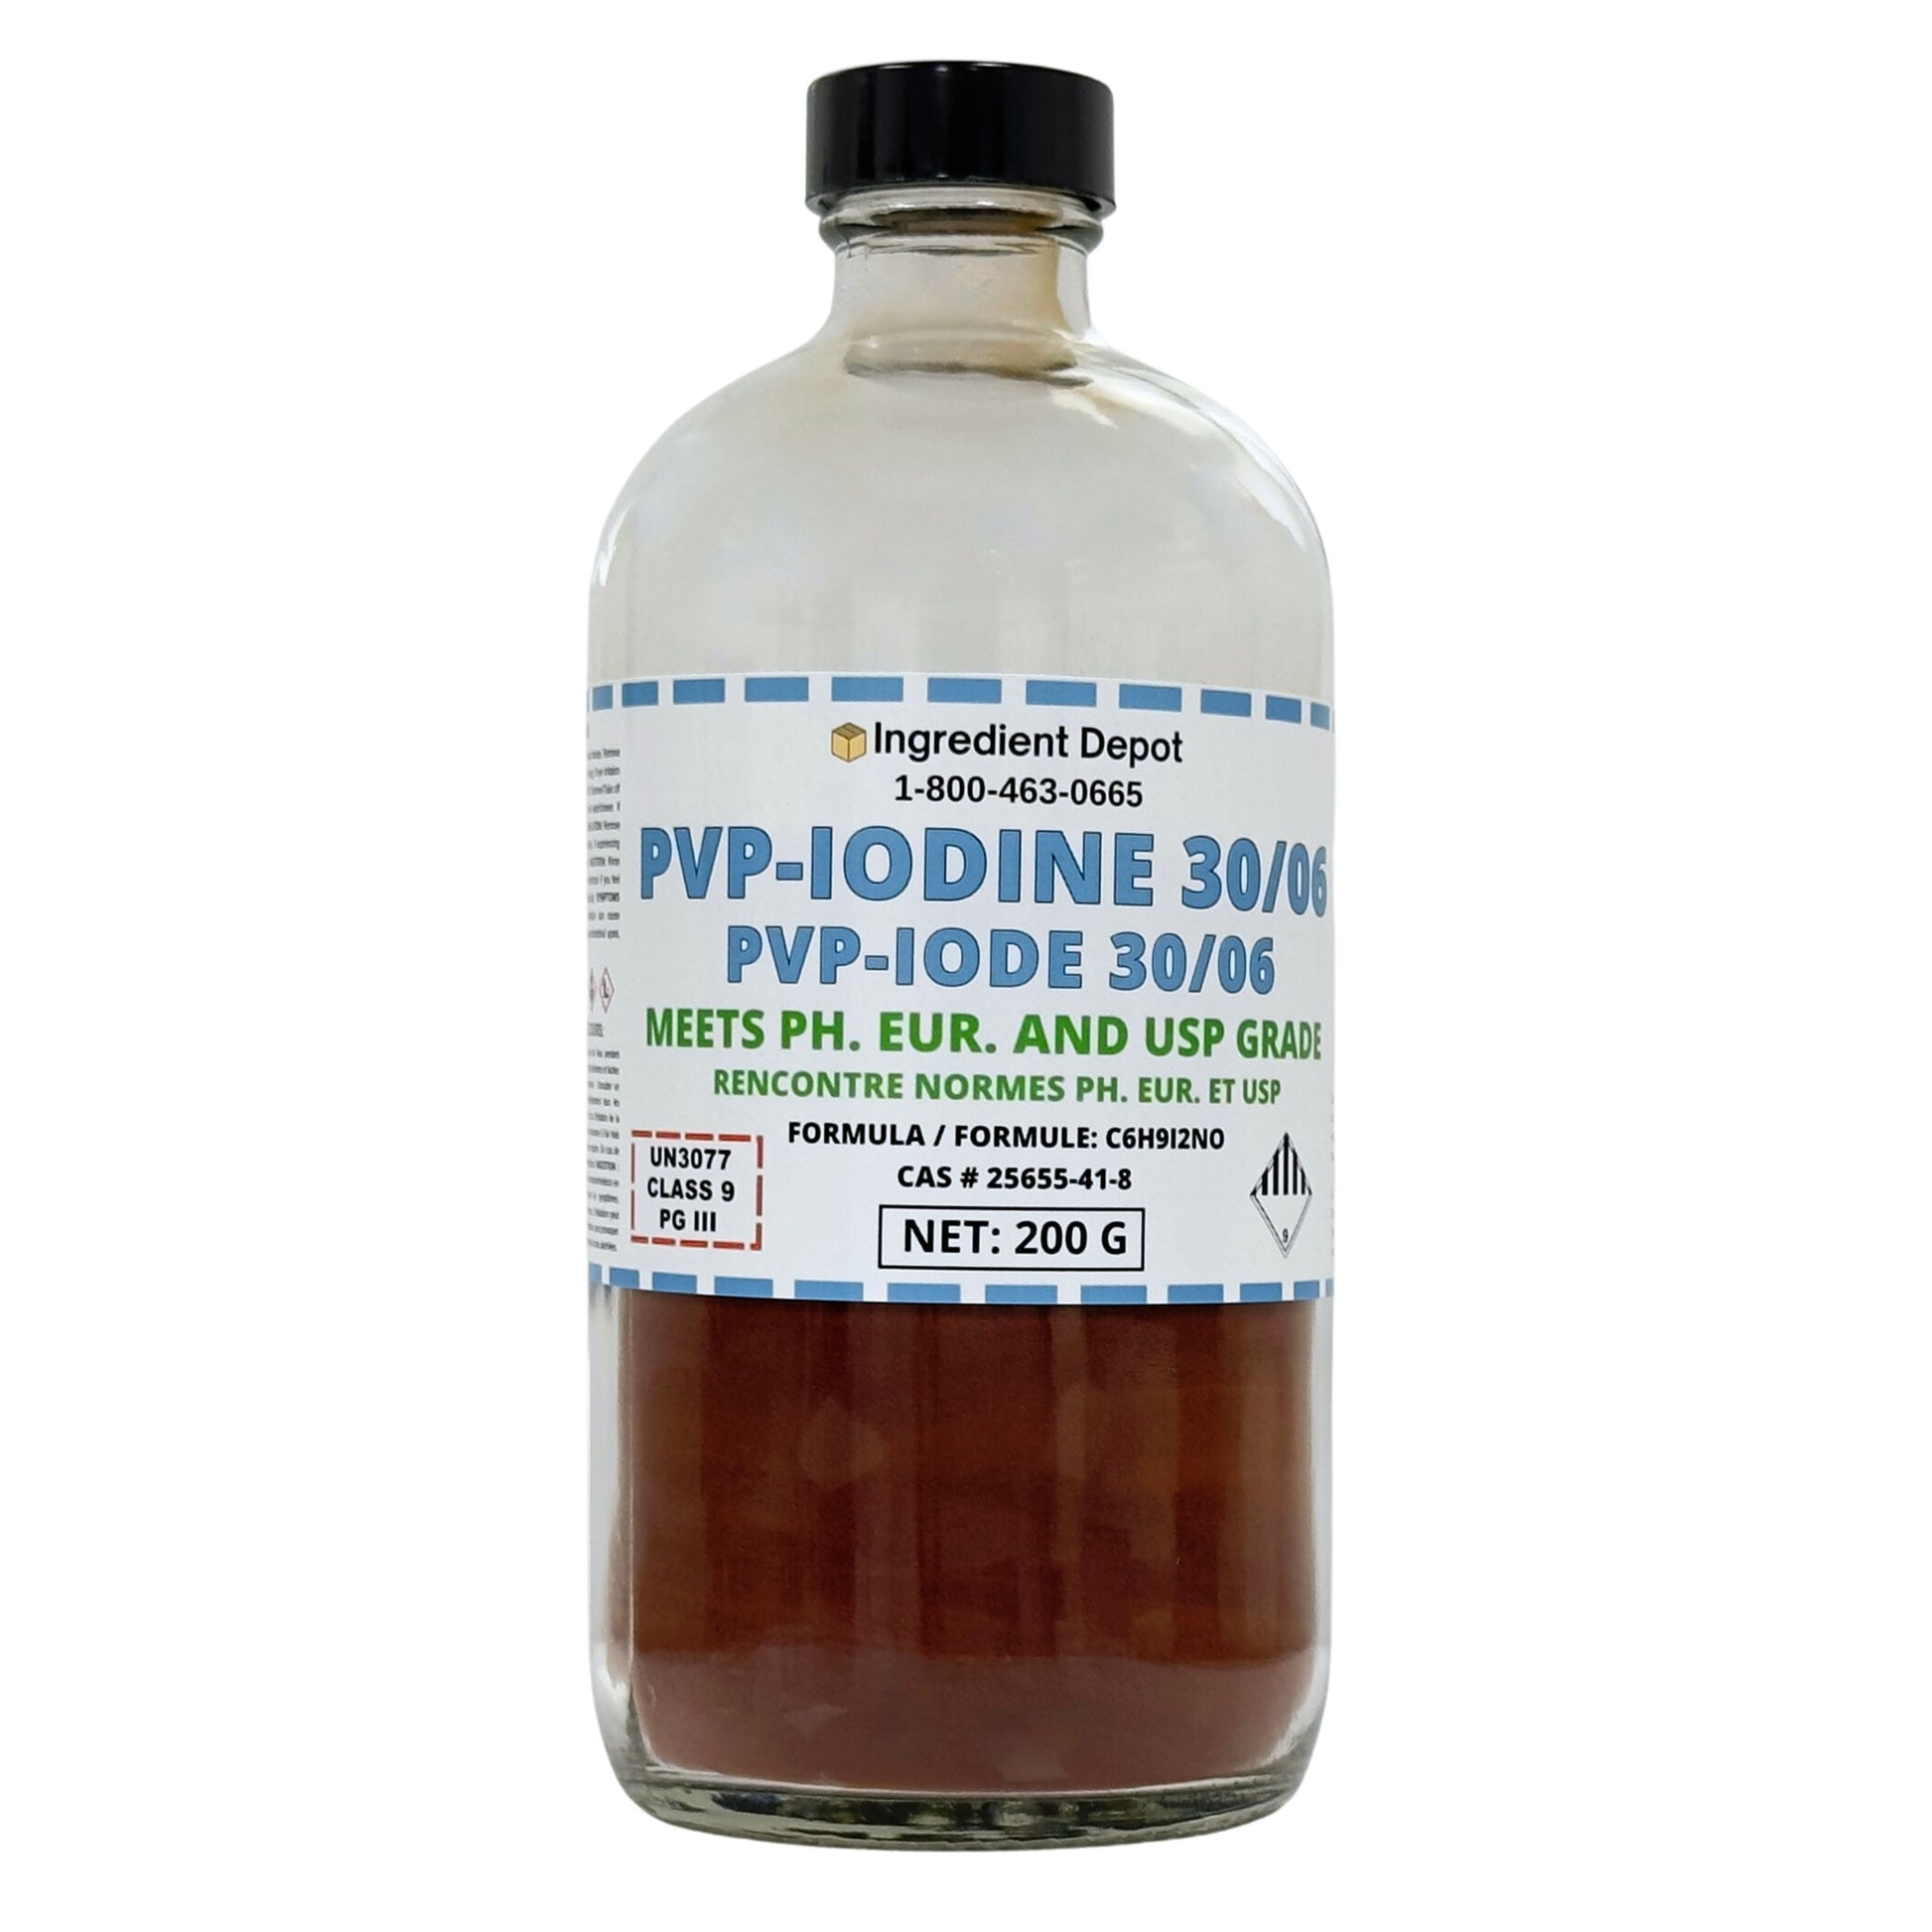 PVP-Iodine 30/06 (PVP-I, Povidone-Iodine) 200g - IngredientDepot.com